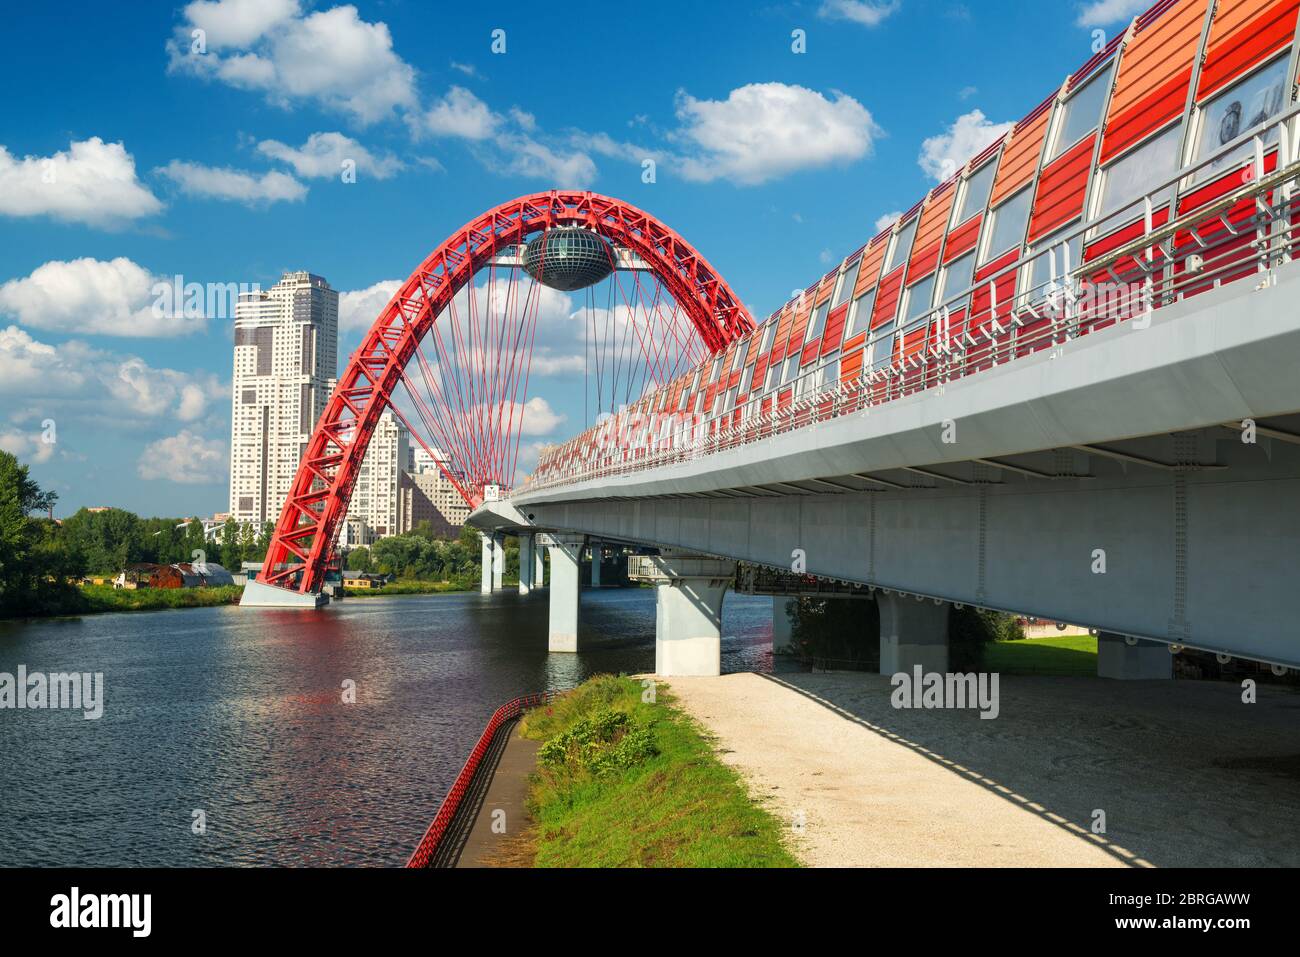 Un pont moderne avec passage de câbles (pont de Zhivopisny) à Moscou. C'est le pont le plus haut d'Europe. Banque D'Images